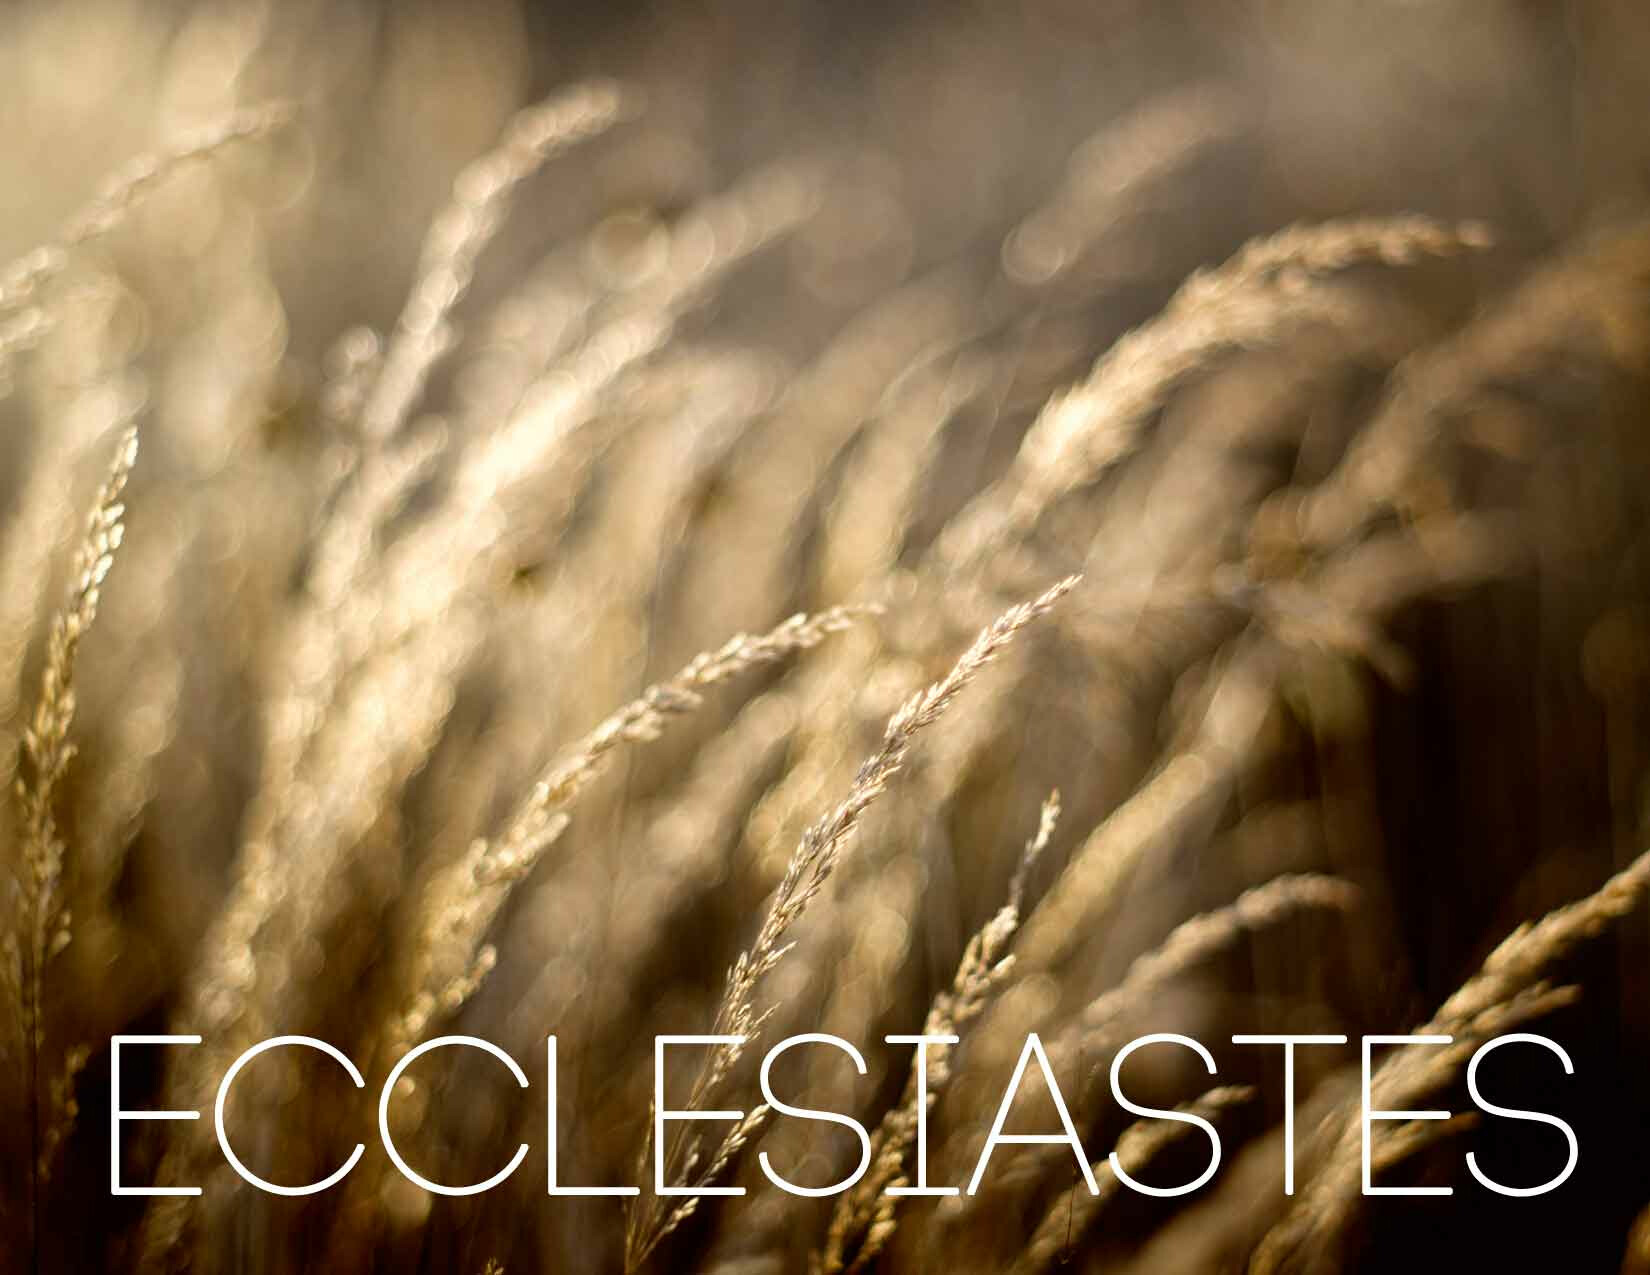 Ecclesiastes | Enjoy